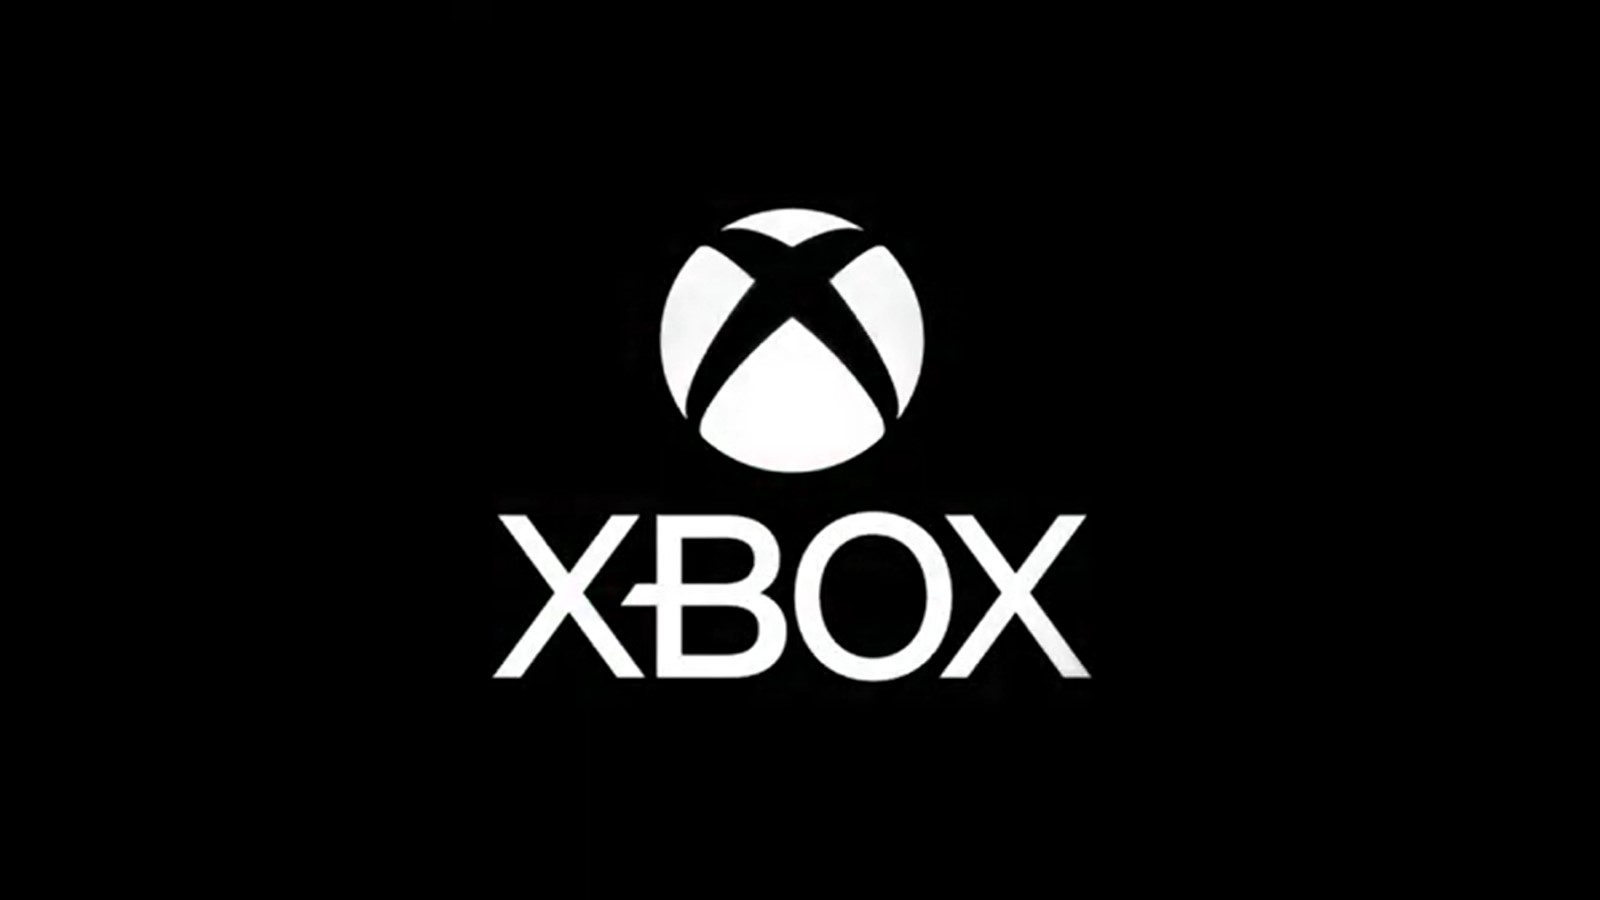 أصيب لاعب Xbox بالذهول بعد تلقي نفس الرسالة الغاضبة من الخصم بعد سنوات